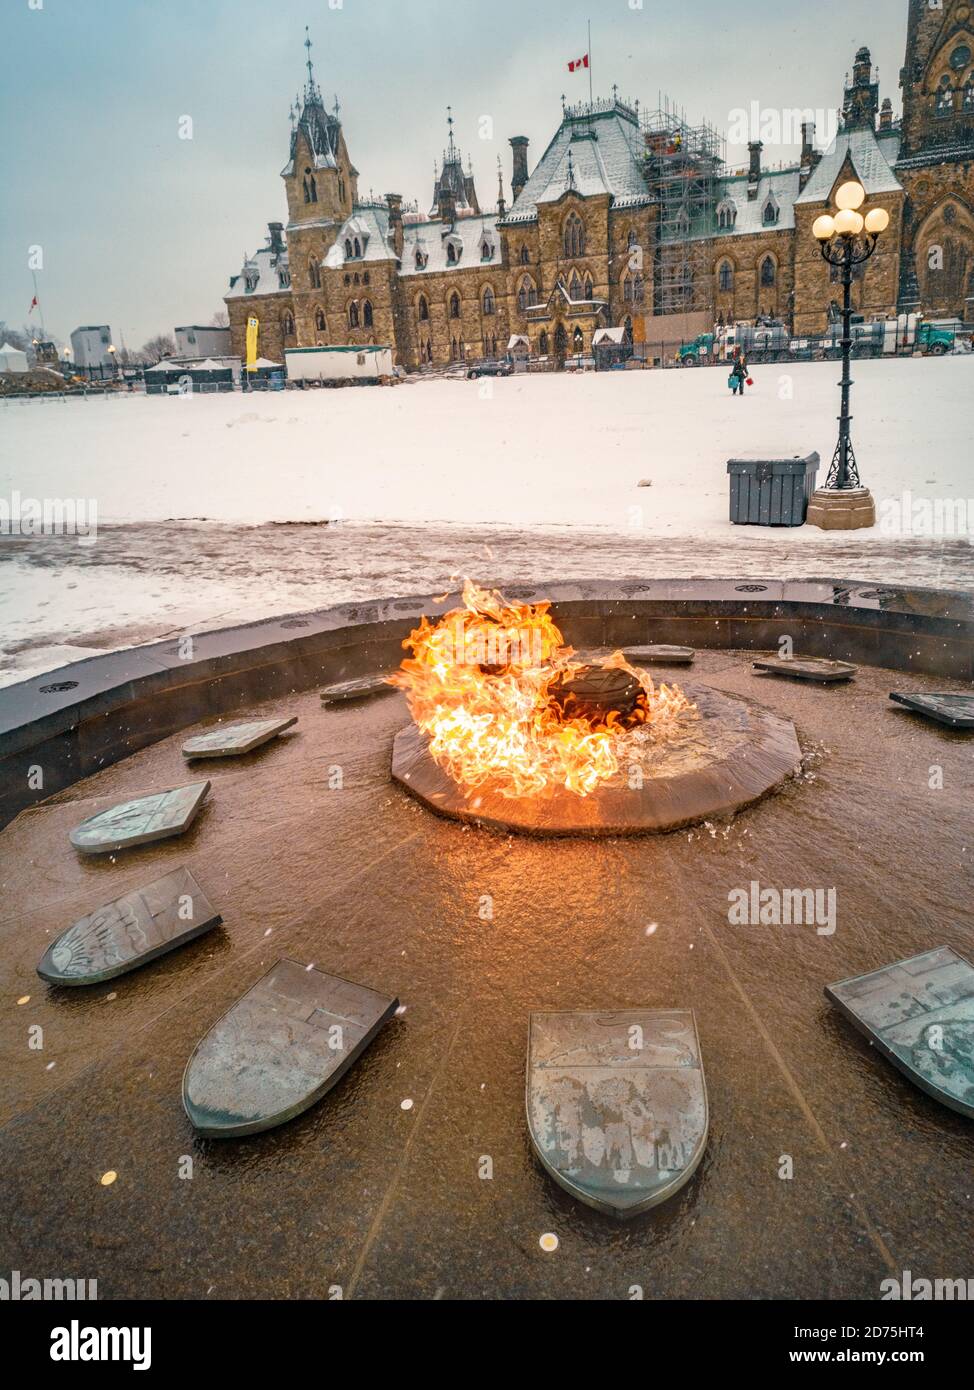 Hundertjährige Flamme auf dem parlamentshügel in Ottawa, Ontario, Kanada zum 100. Jahrestag der Gründung Kanadas als Konföderation. Reiseziel im Winter Stockfoto